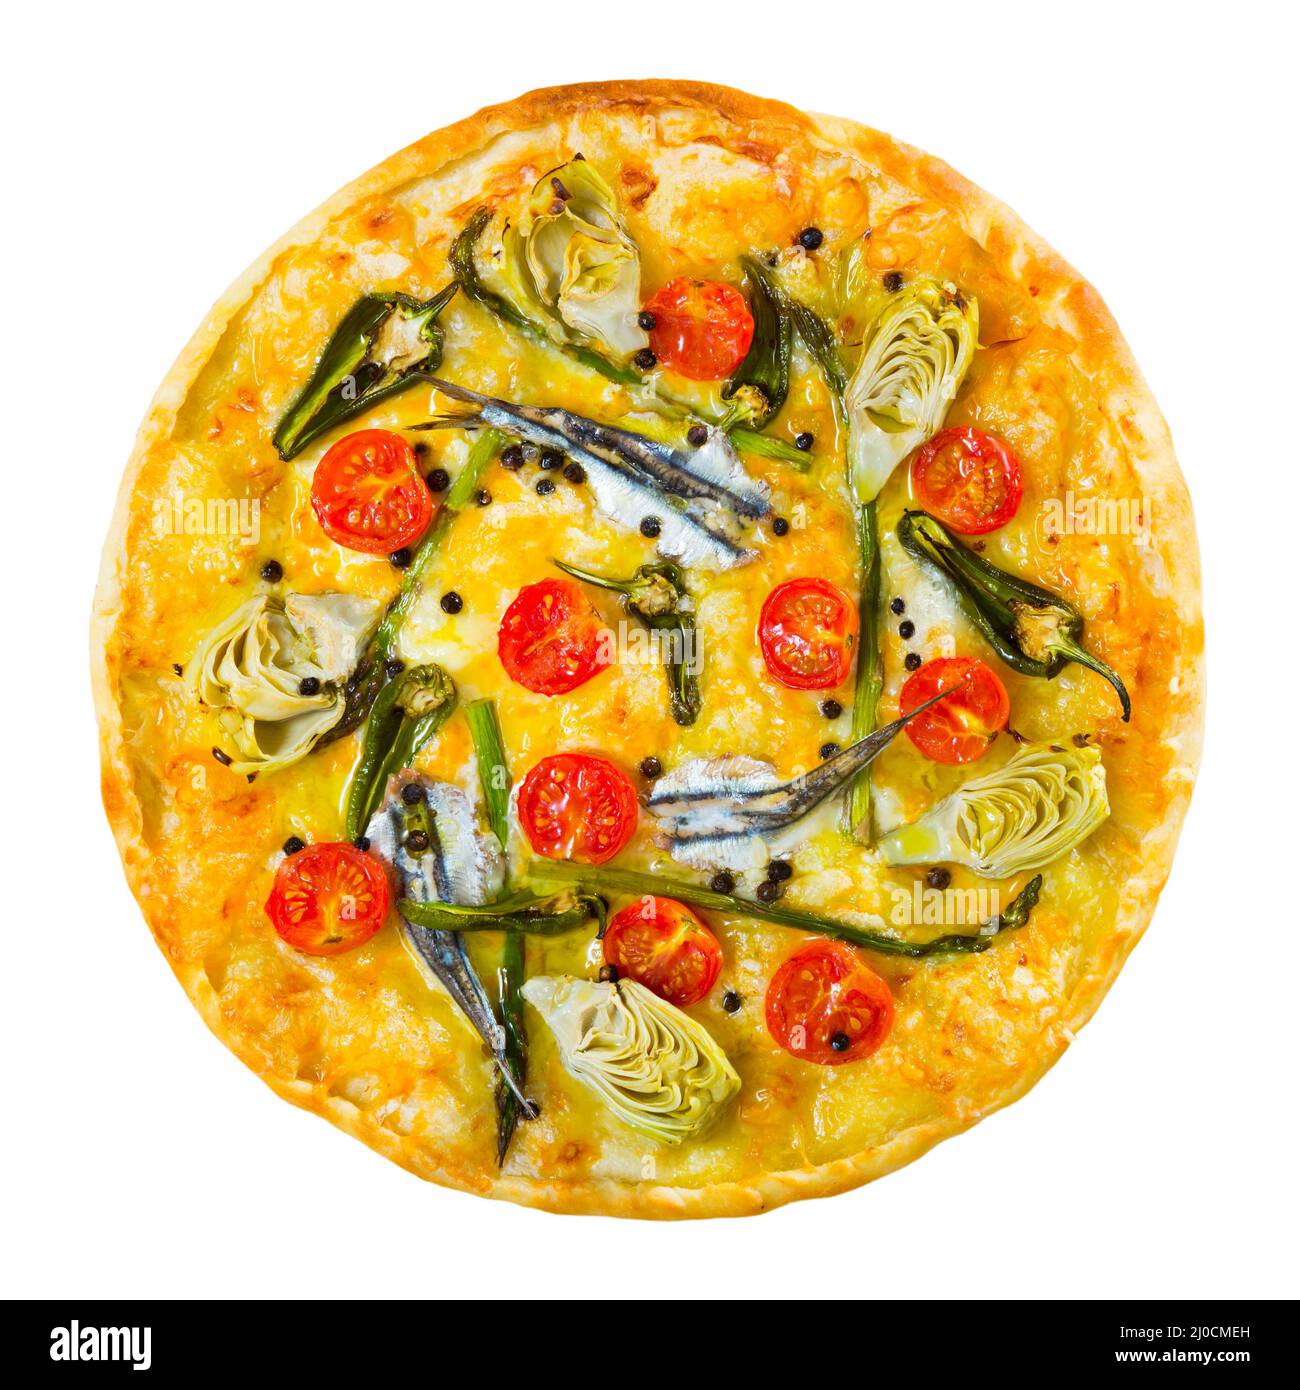 Vue de dessus de pizza avec anchois, artichauts, fromage, tomates séchées Banque D'Images